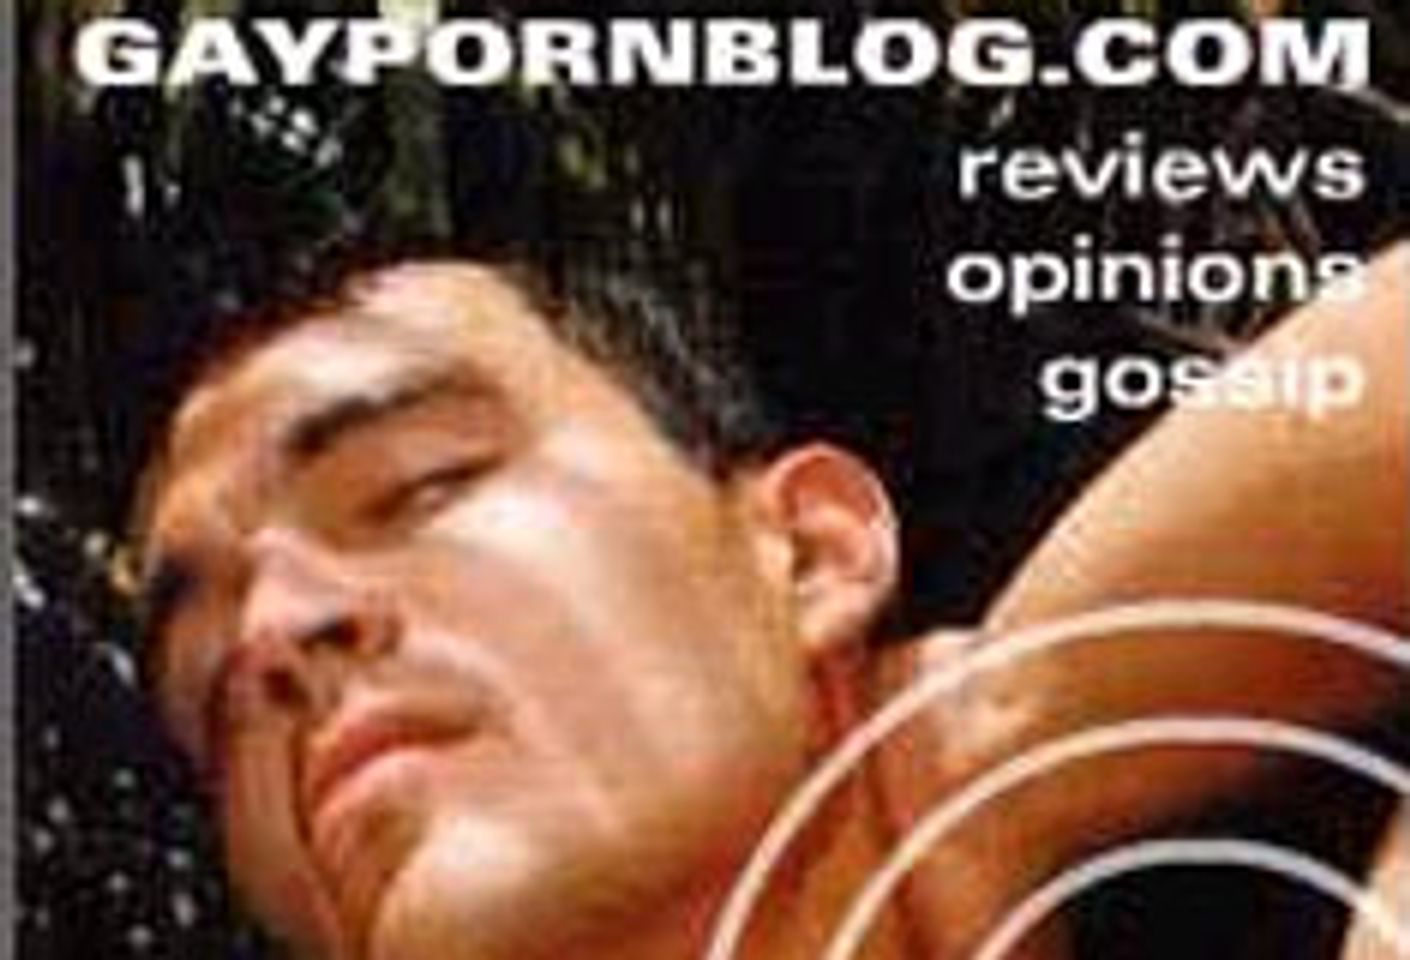 Google Ranks Naked Sword Site Top Source for Gay Porn - AVN Online